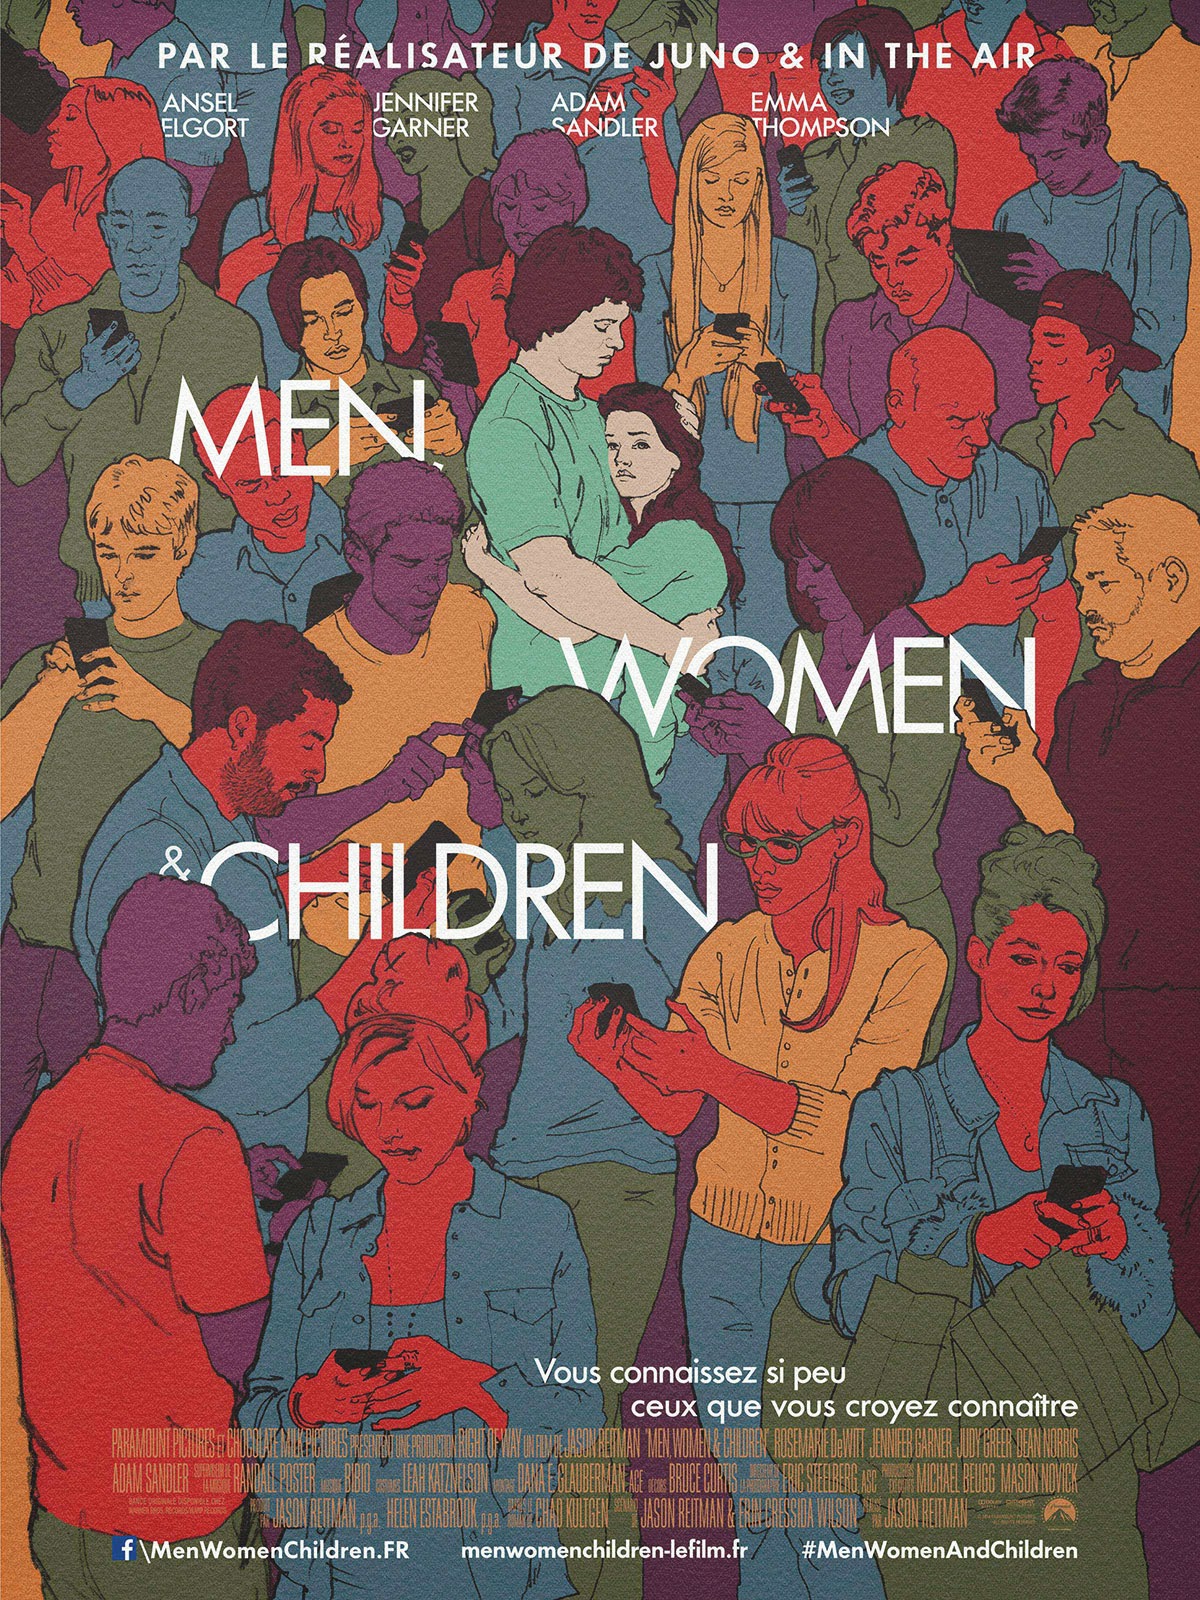 http://fuckingcinephiles.blogspot.fr/2014/12/critique-men-women-children.html